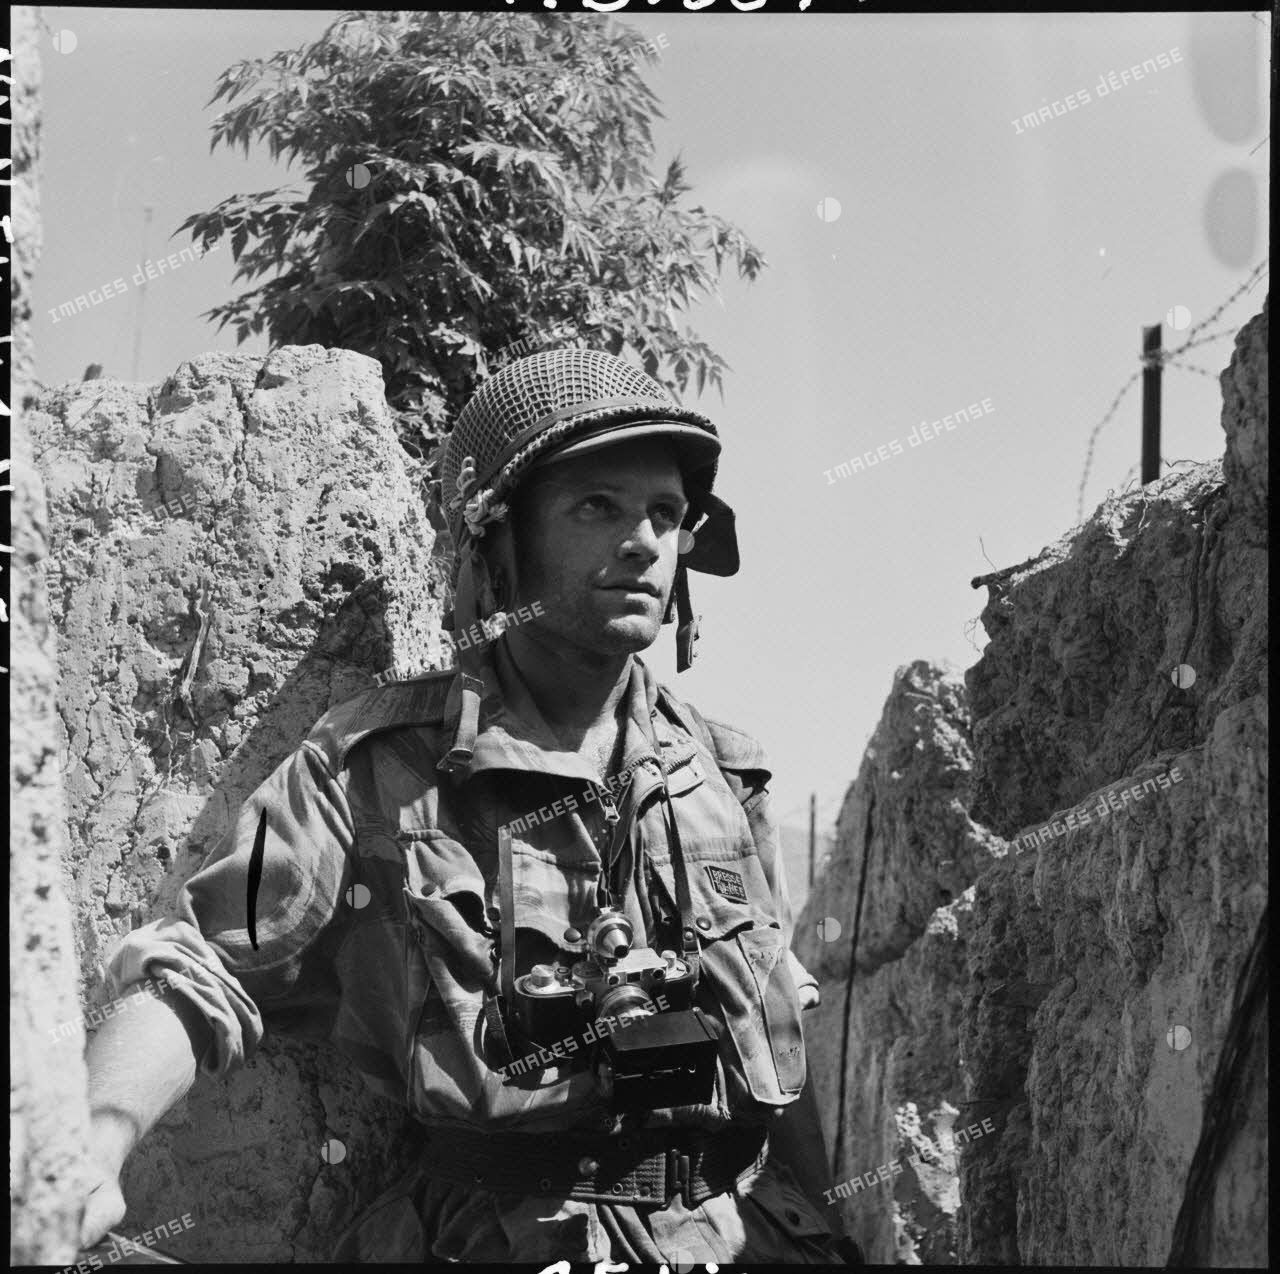 Le photographe du Service presse information (SPI) Jean Péraud, avec son appareil photographique Leica, dans une tranchée d'Isabelle à Diên Bien Phu.